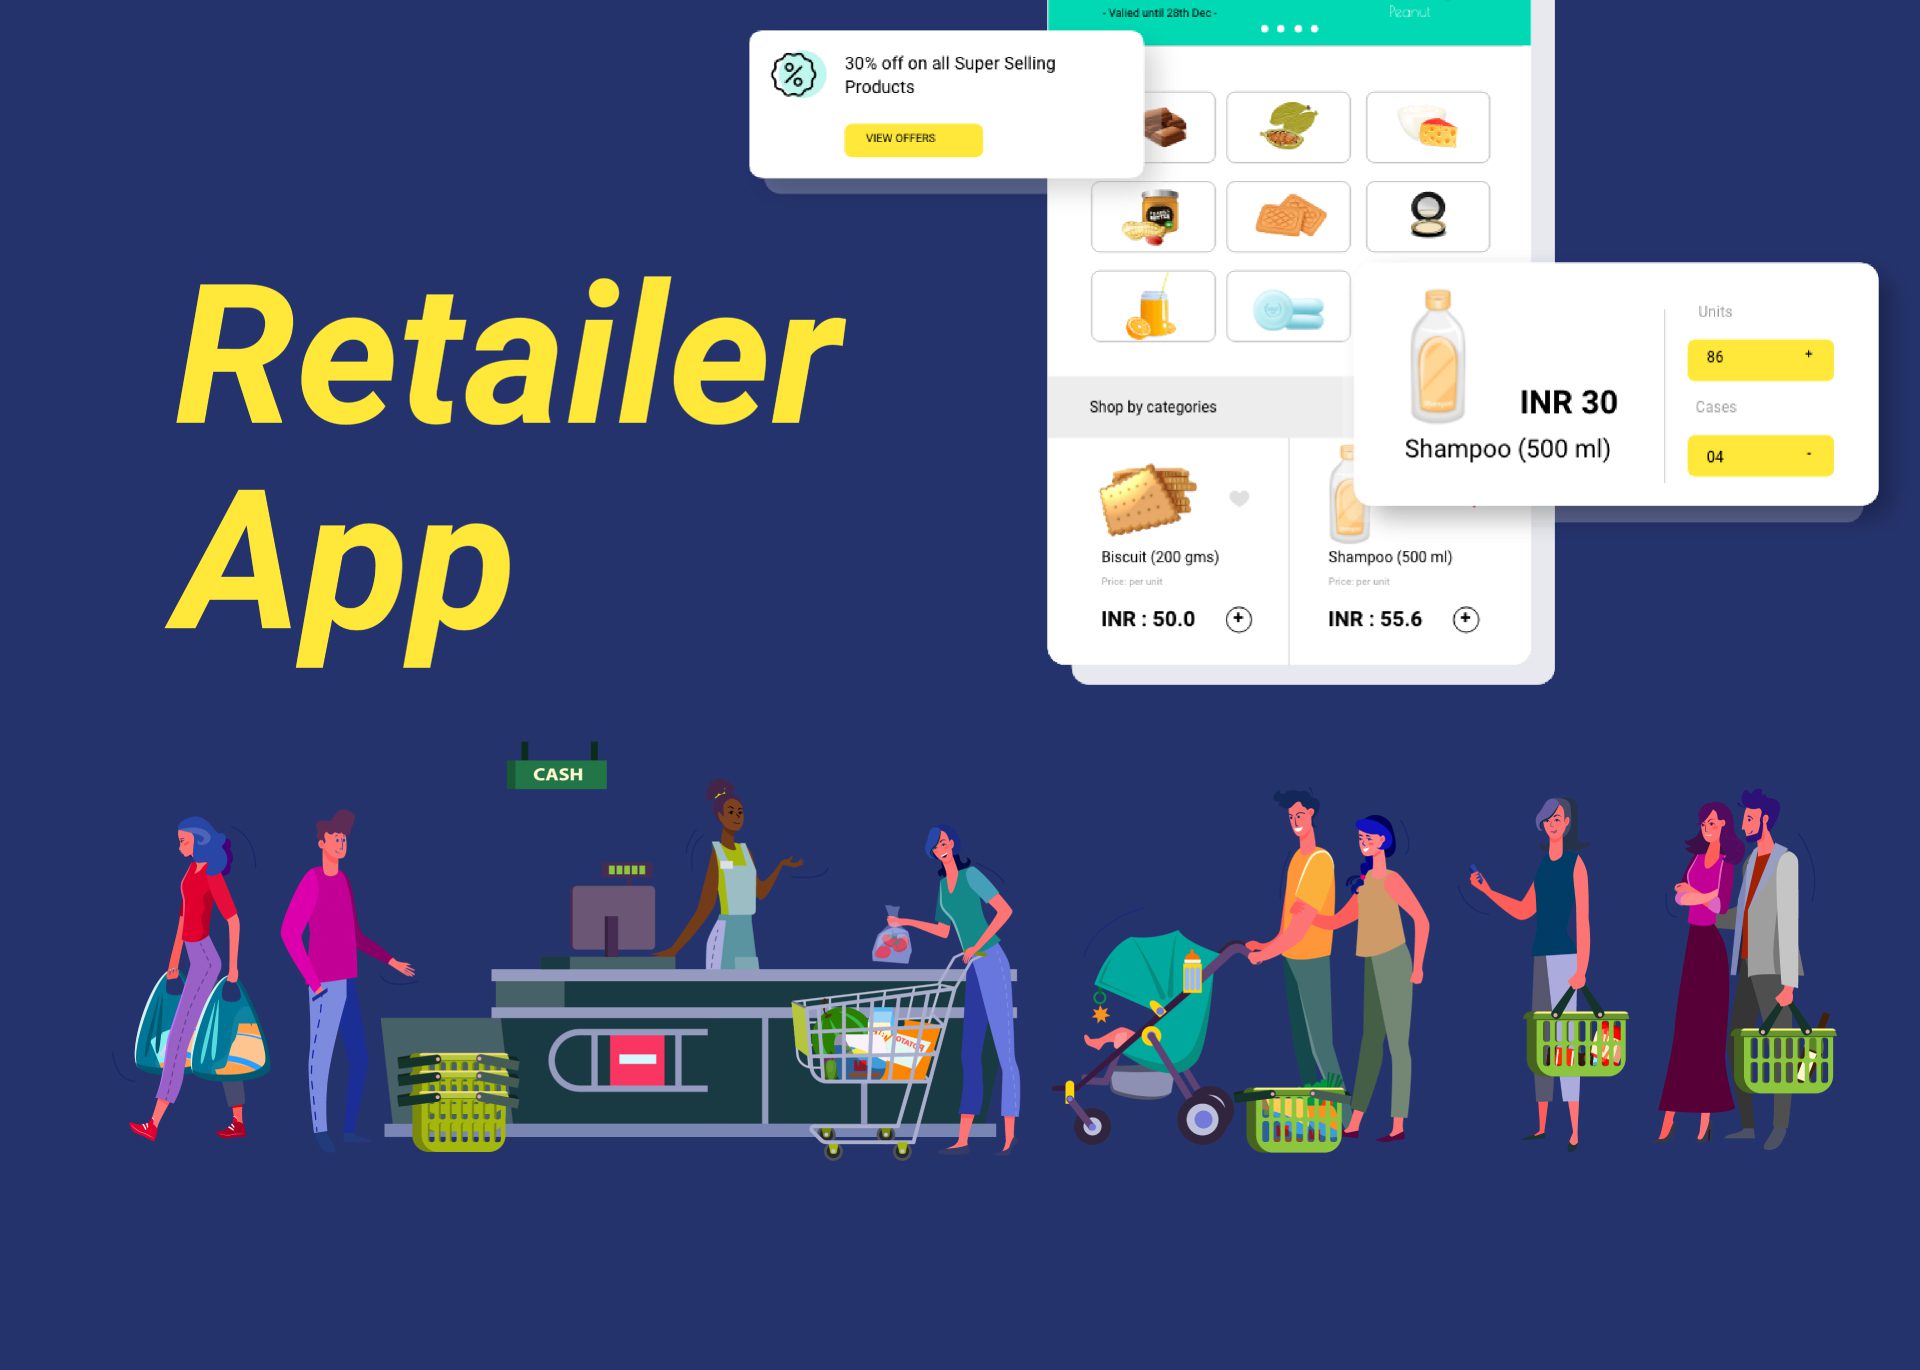 Retailer App Report